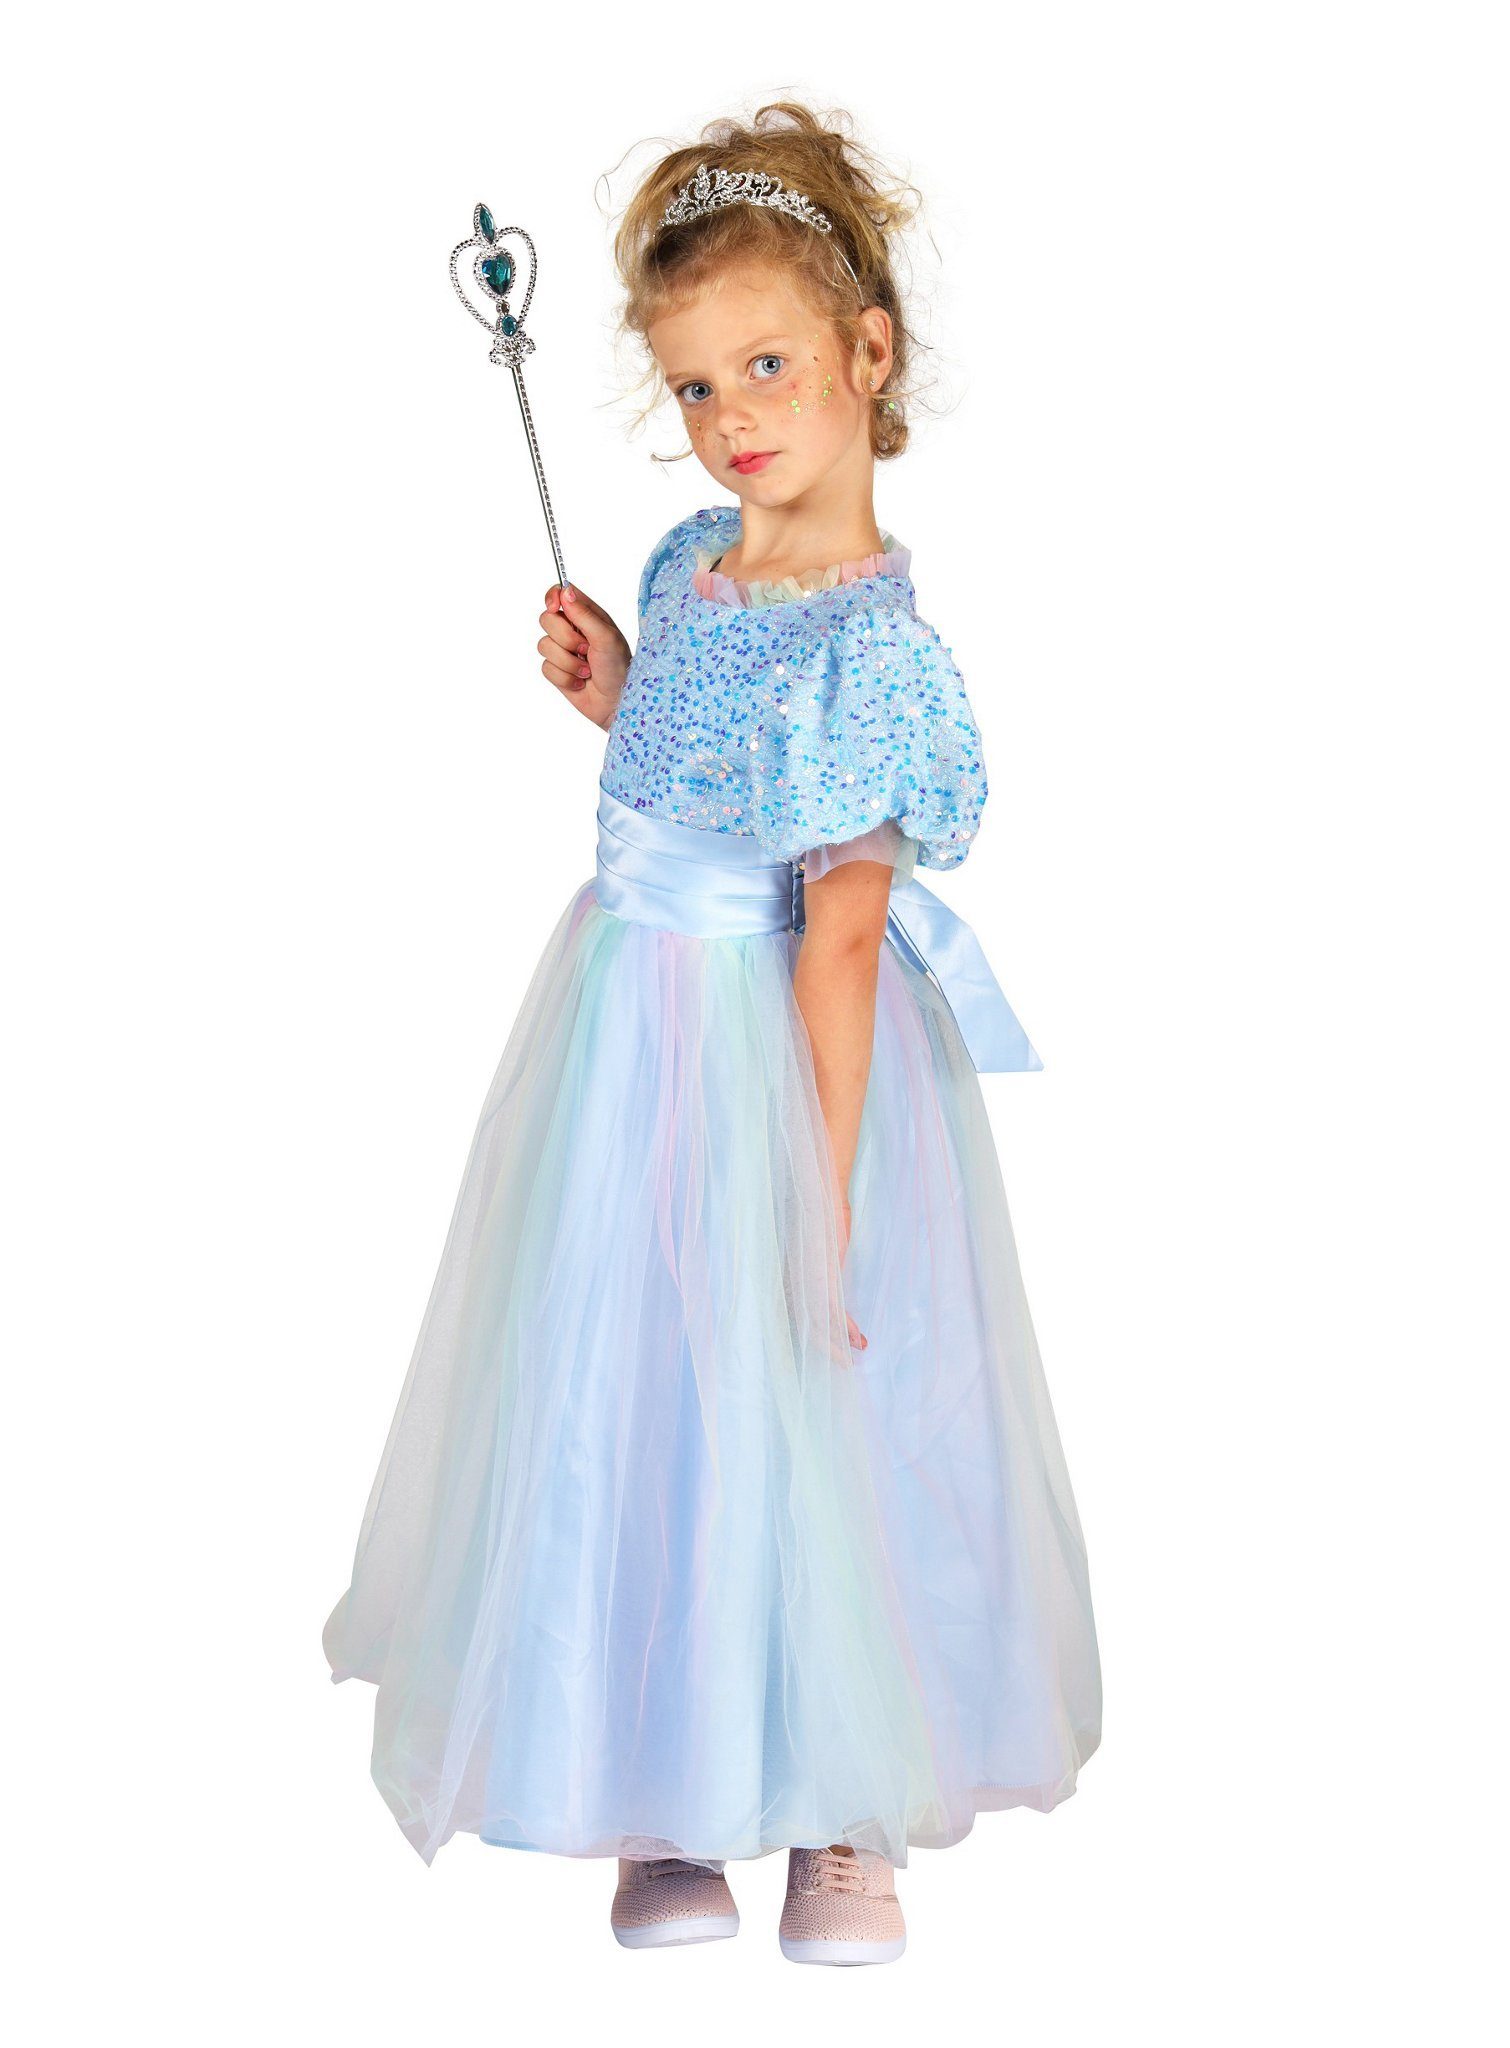 thetru Kostüm Blaues Märchenkleid für Kinder, Süßes Kleid für die himmelblaue Prinzessin